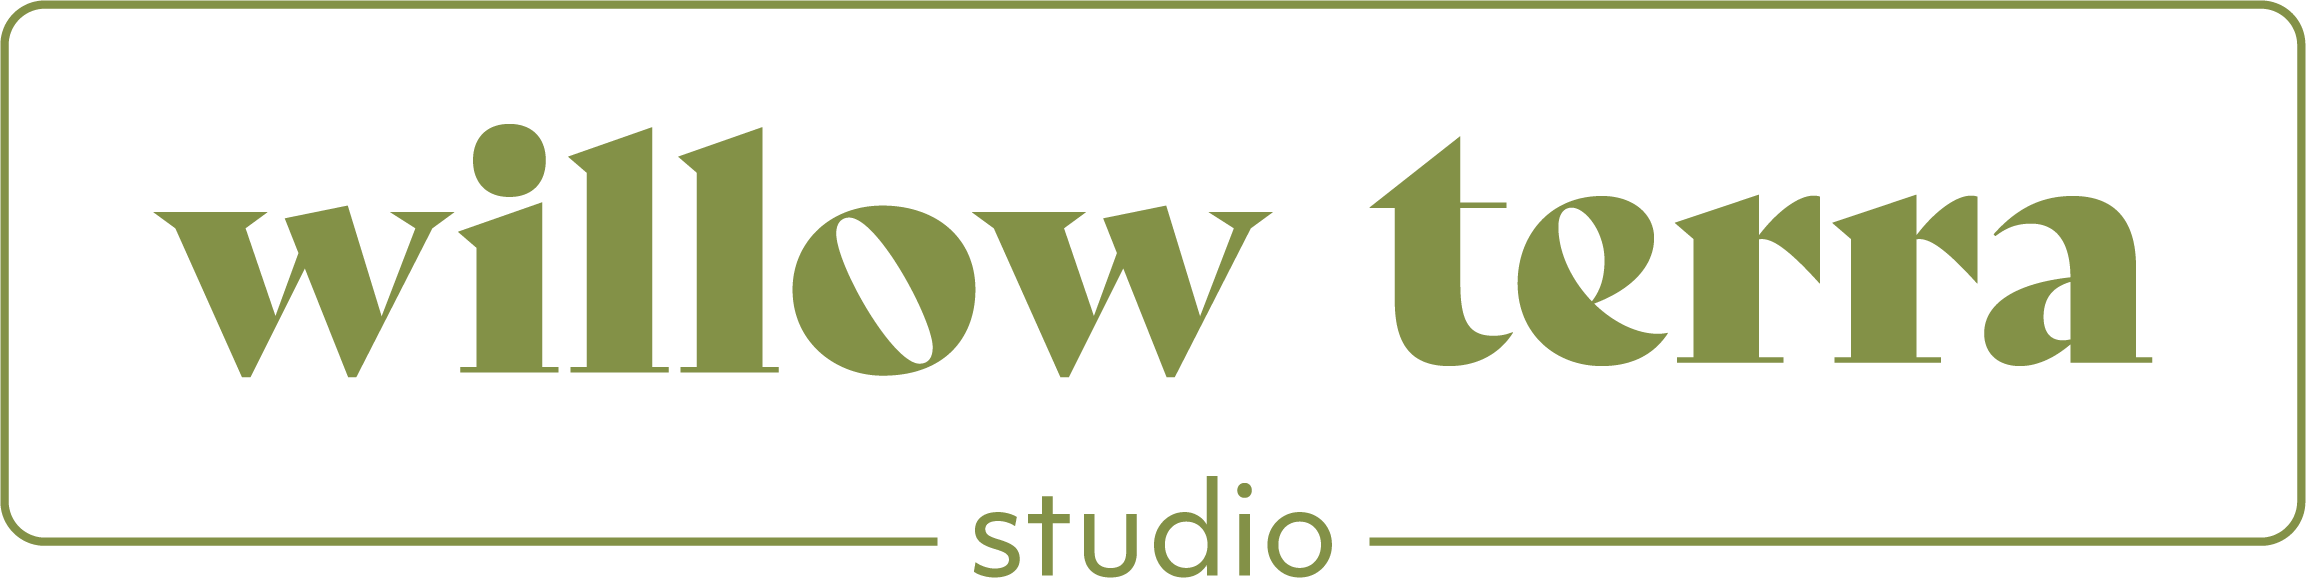 Willow Terra Studio